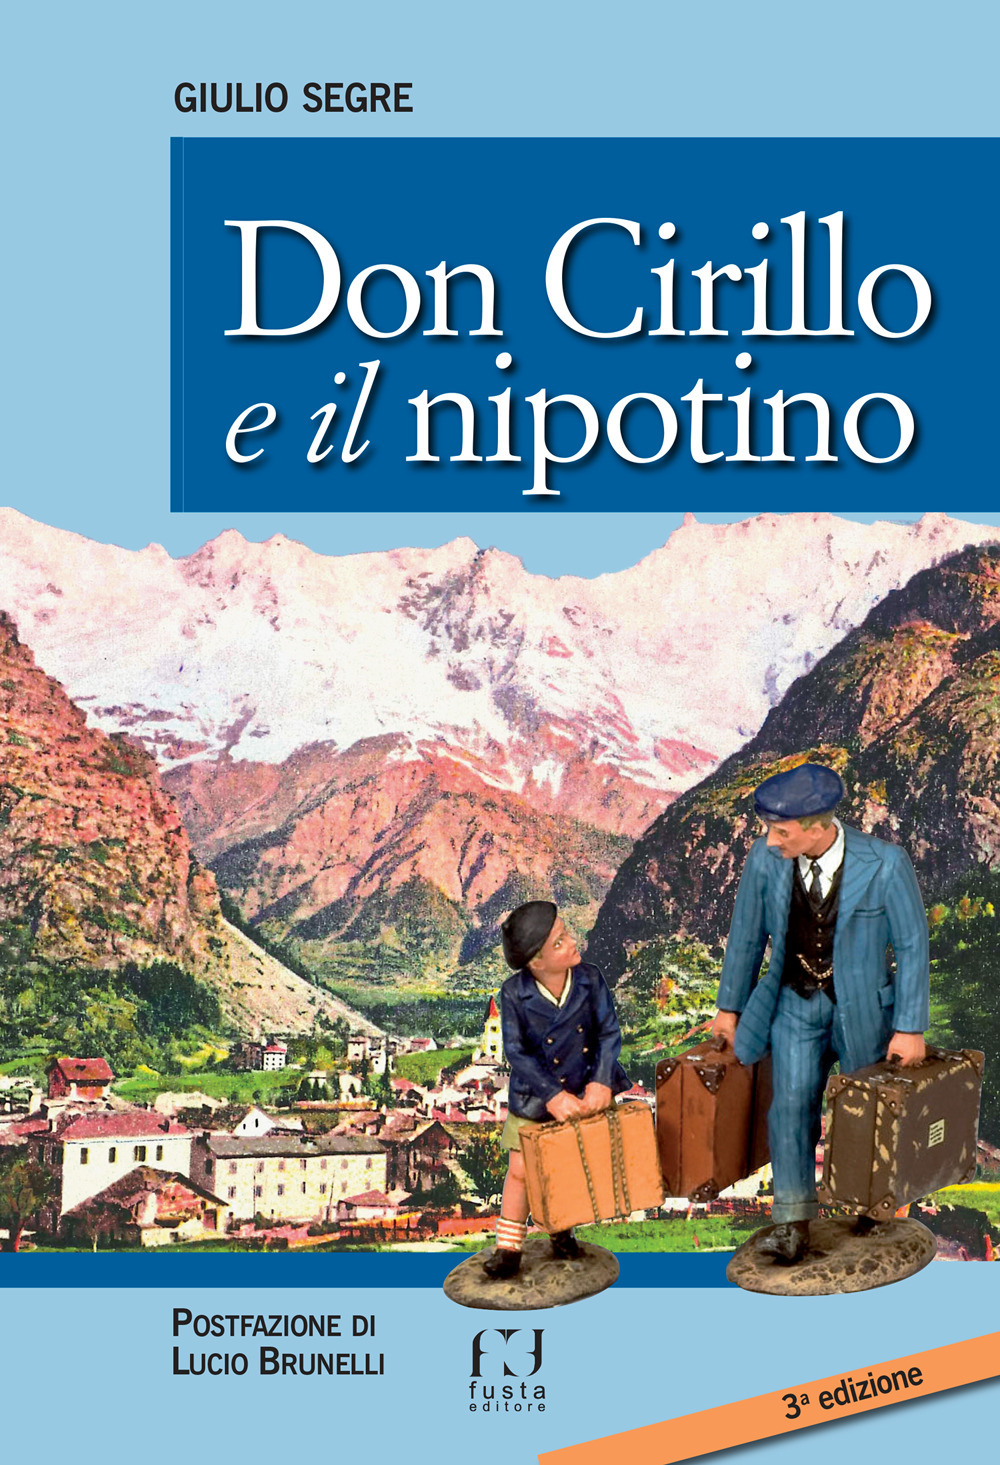 Don Cirillo e il nipotino